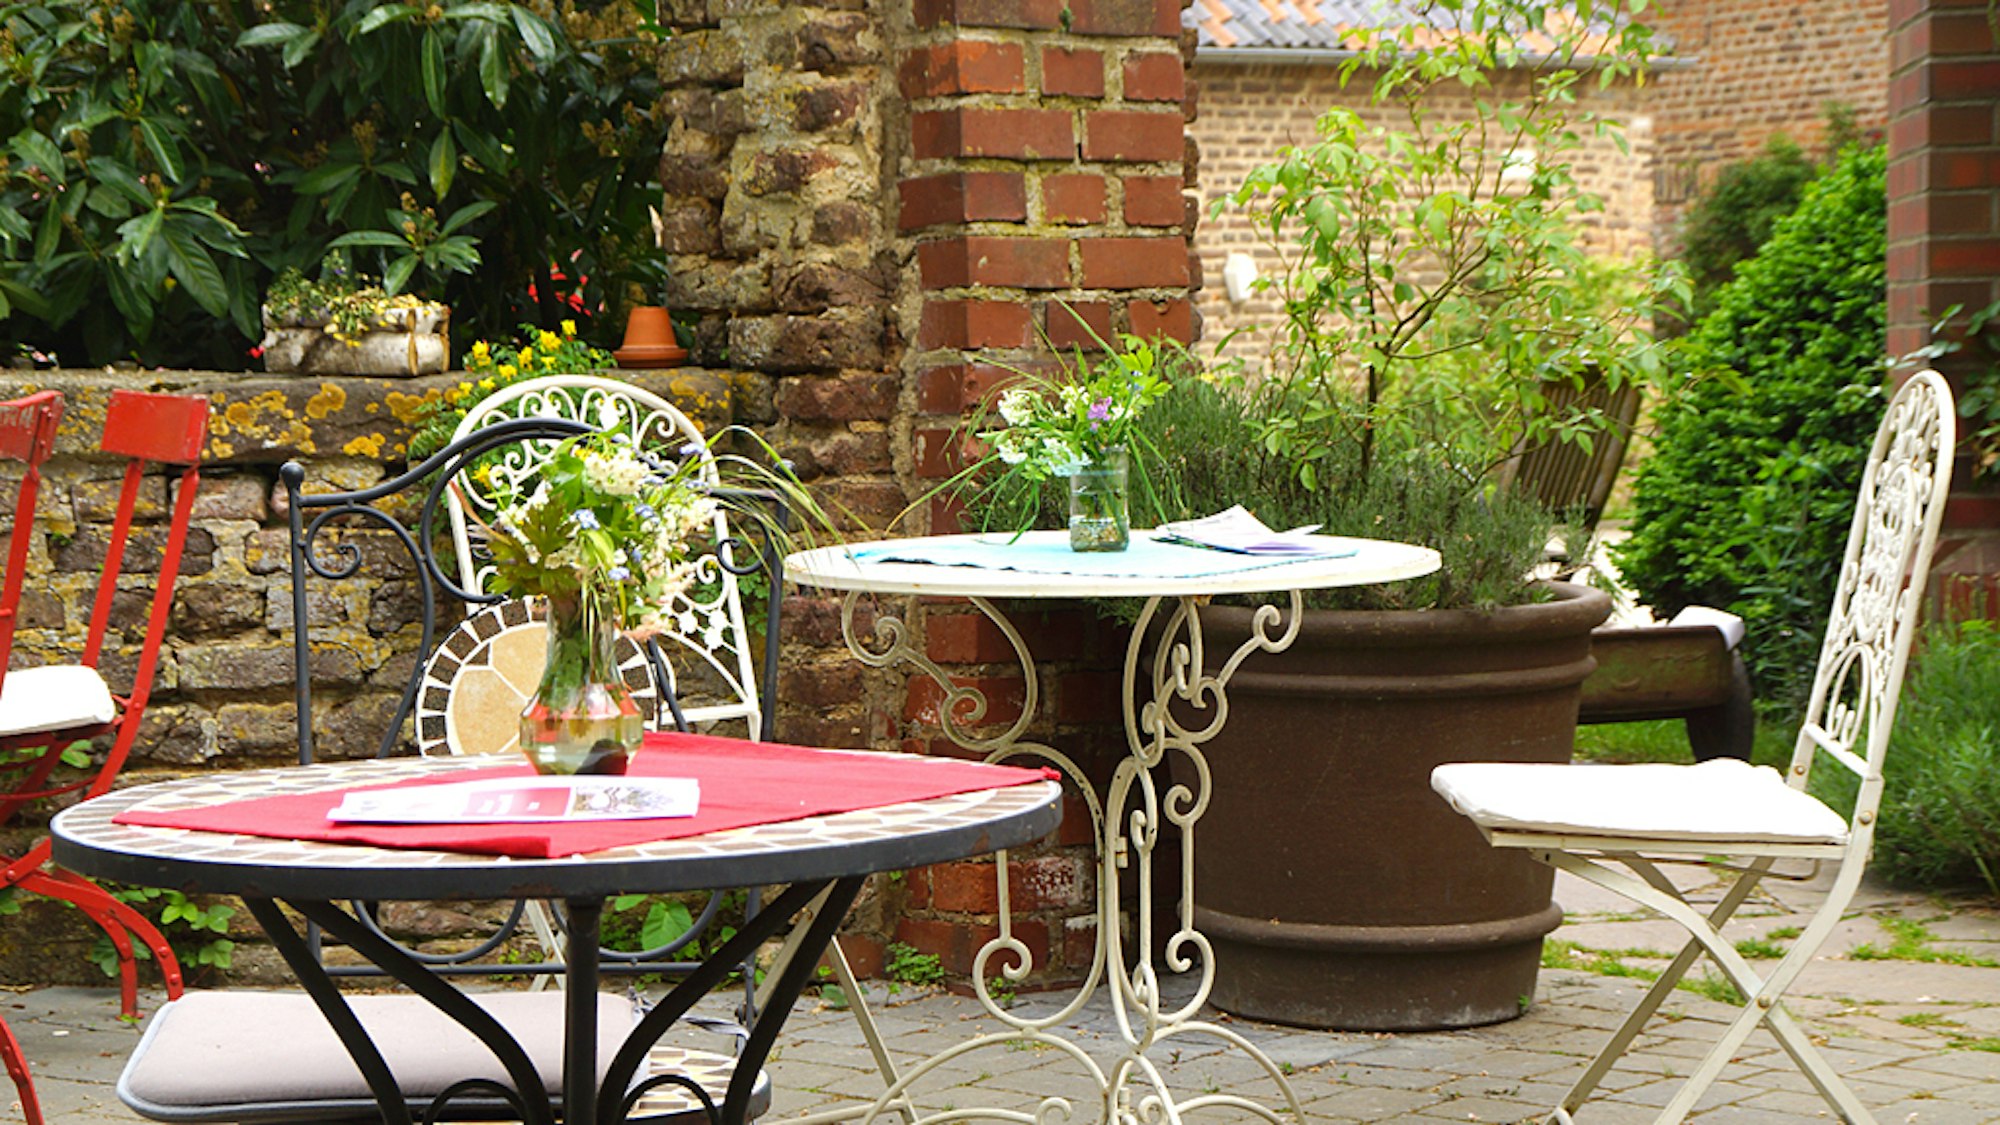 Gartentische und -stühle aus Metall stehen in einem Innenhof